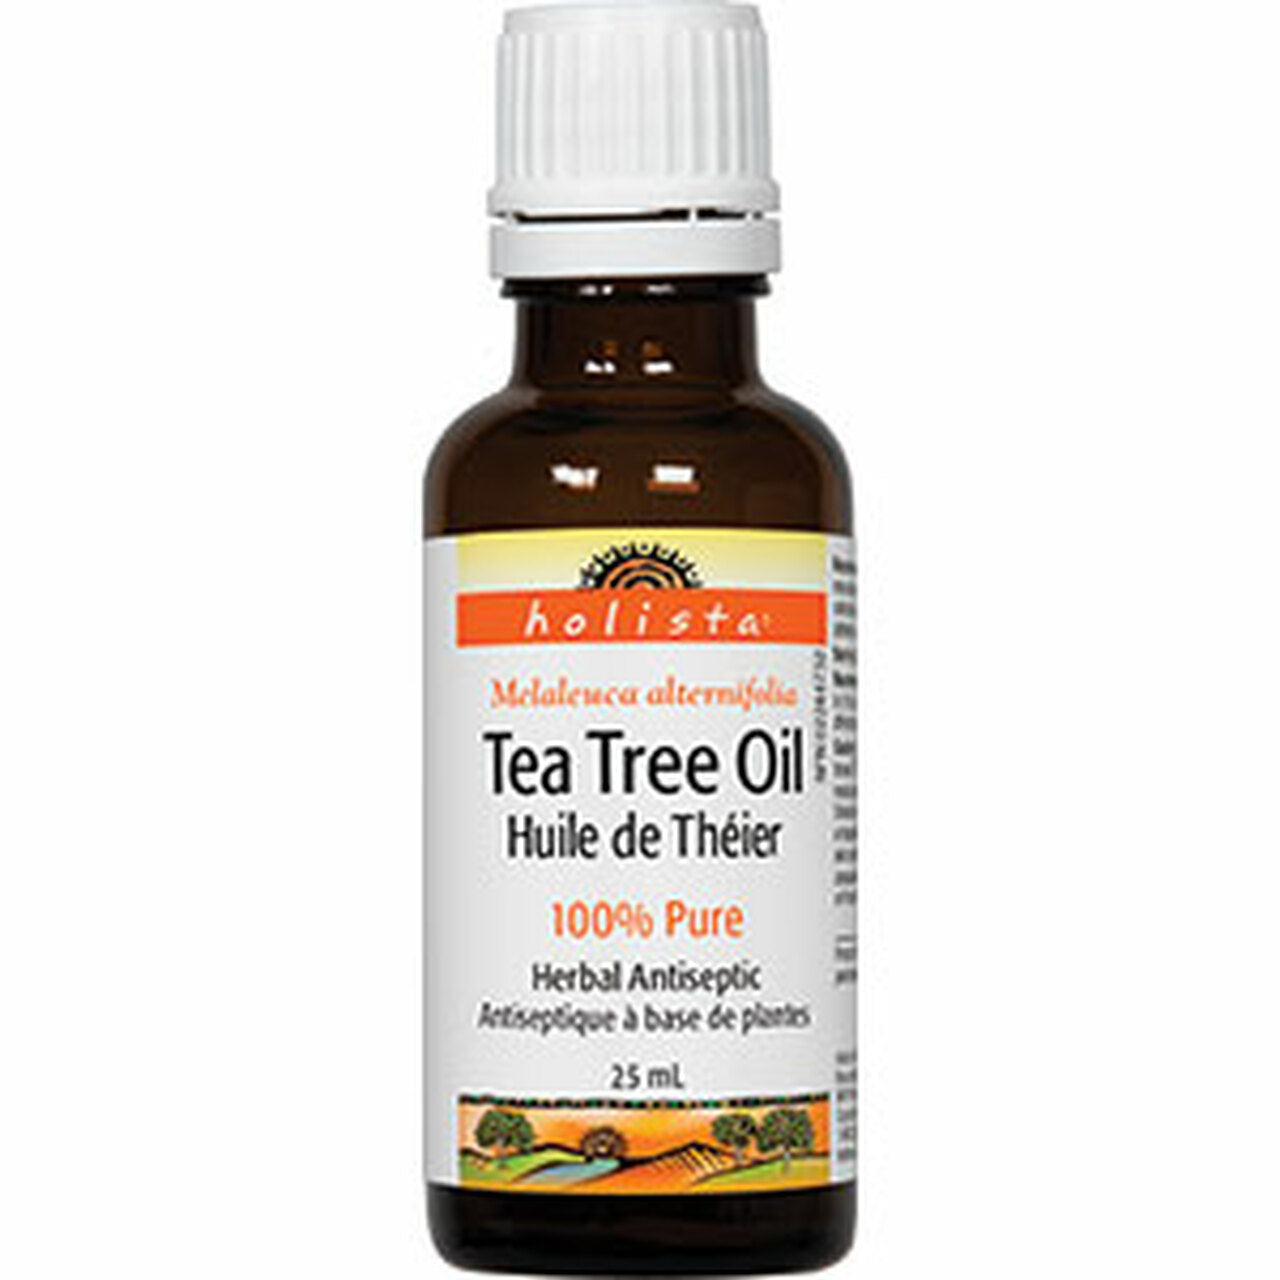 E11 Store, Holista, Tea Tree Oil